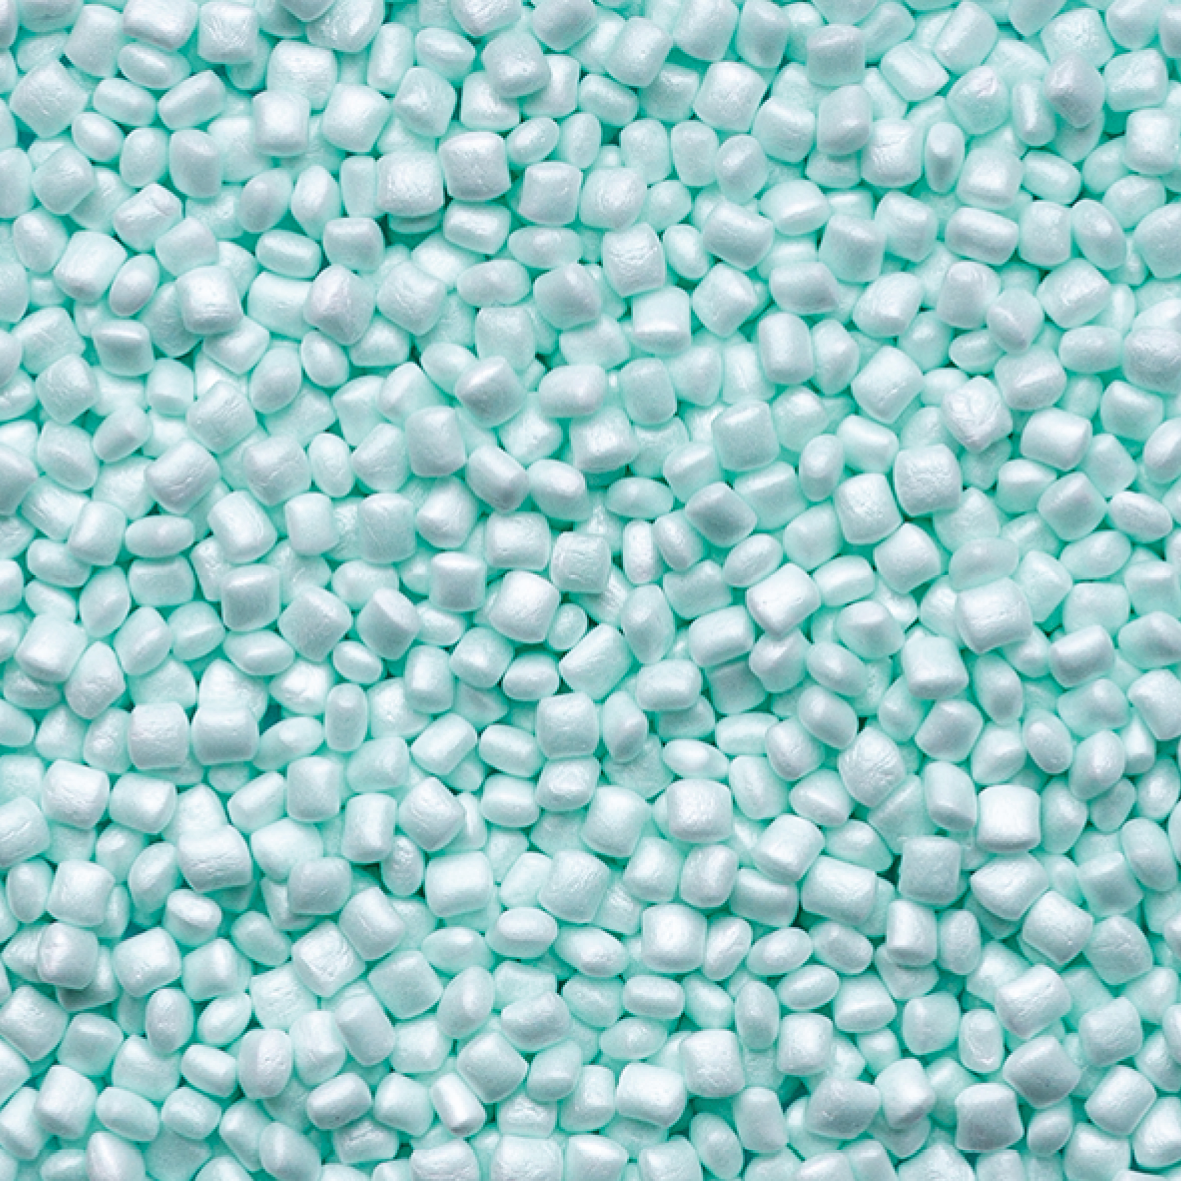 ARPRO 35 Ocean beads